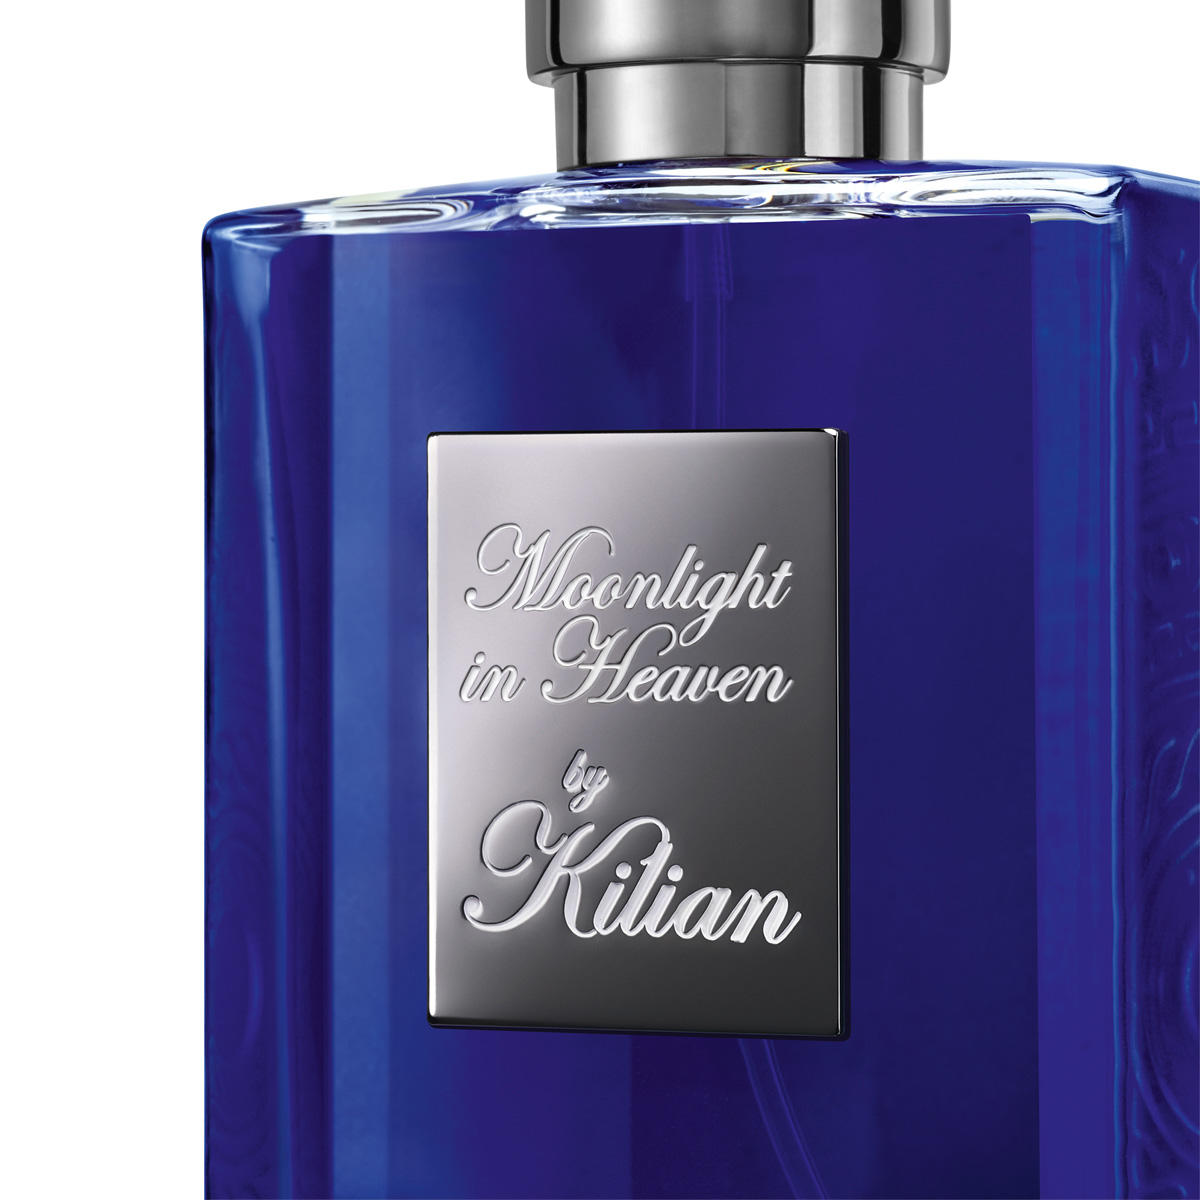 Kilian Paris Fragrance Moonlight in Heaven Eau de Parfum rechargeable 50 ml - 2